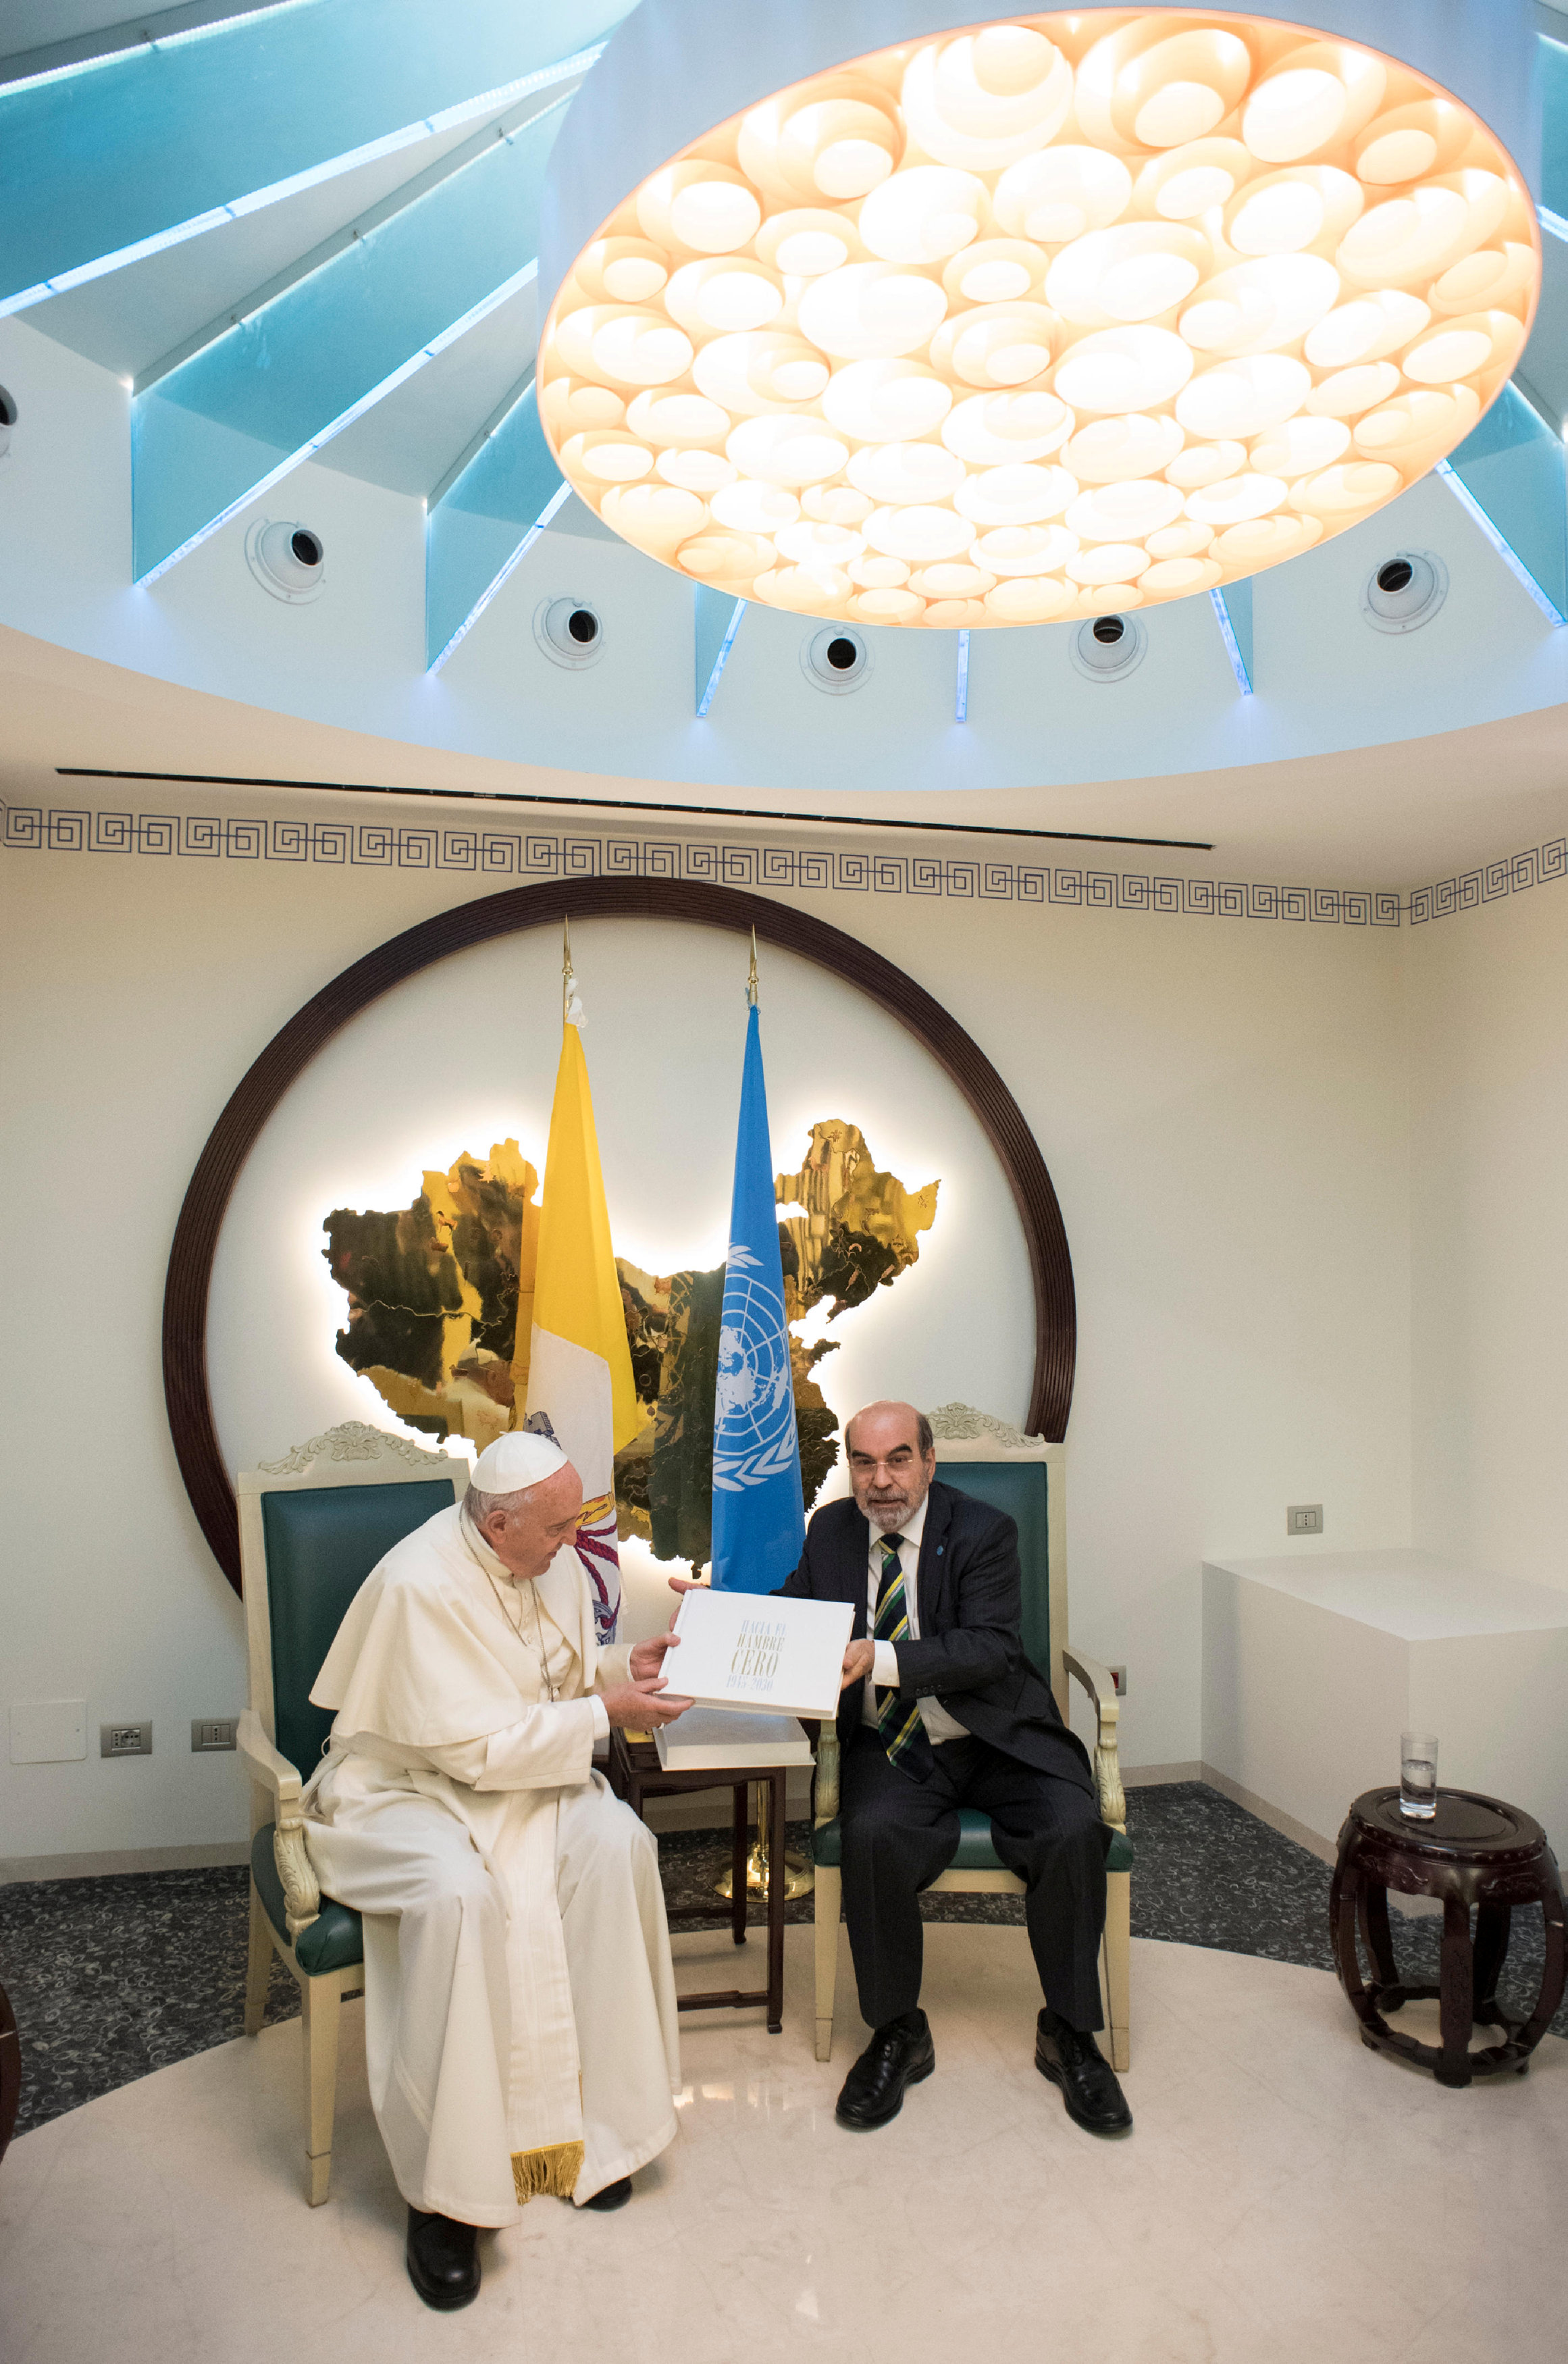 البابا فرانسيس يتحدث مع المدير العام لمنظمة الأغذية والزراعة جوزيه غرازيانو دا سيلفا خلال زيارته لمقر المنظمة في روما